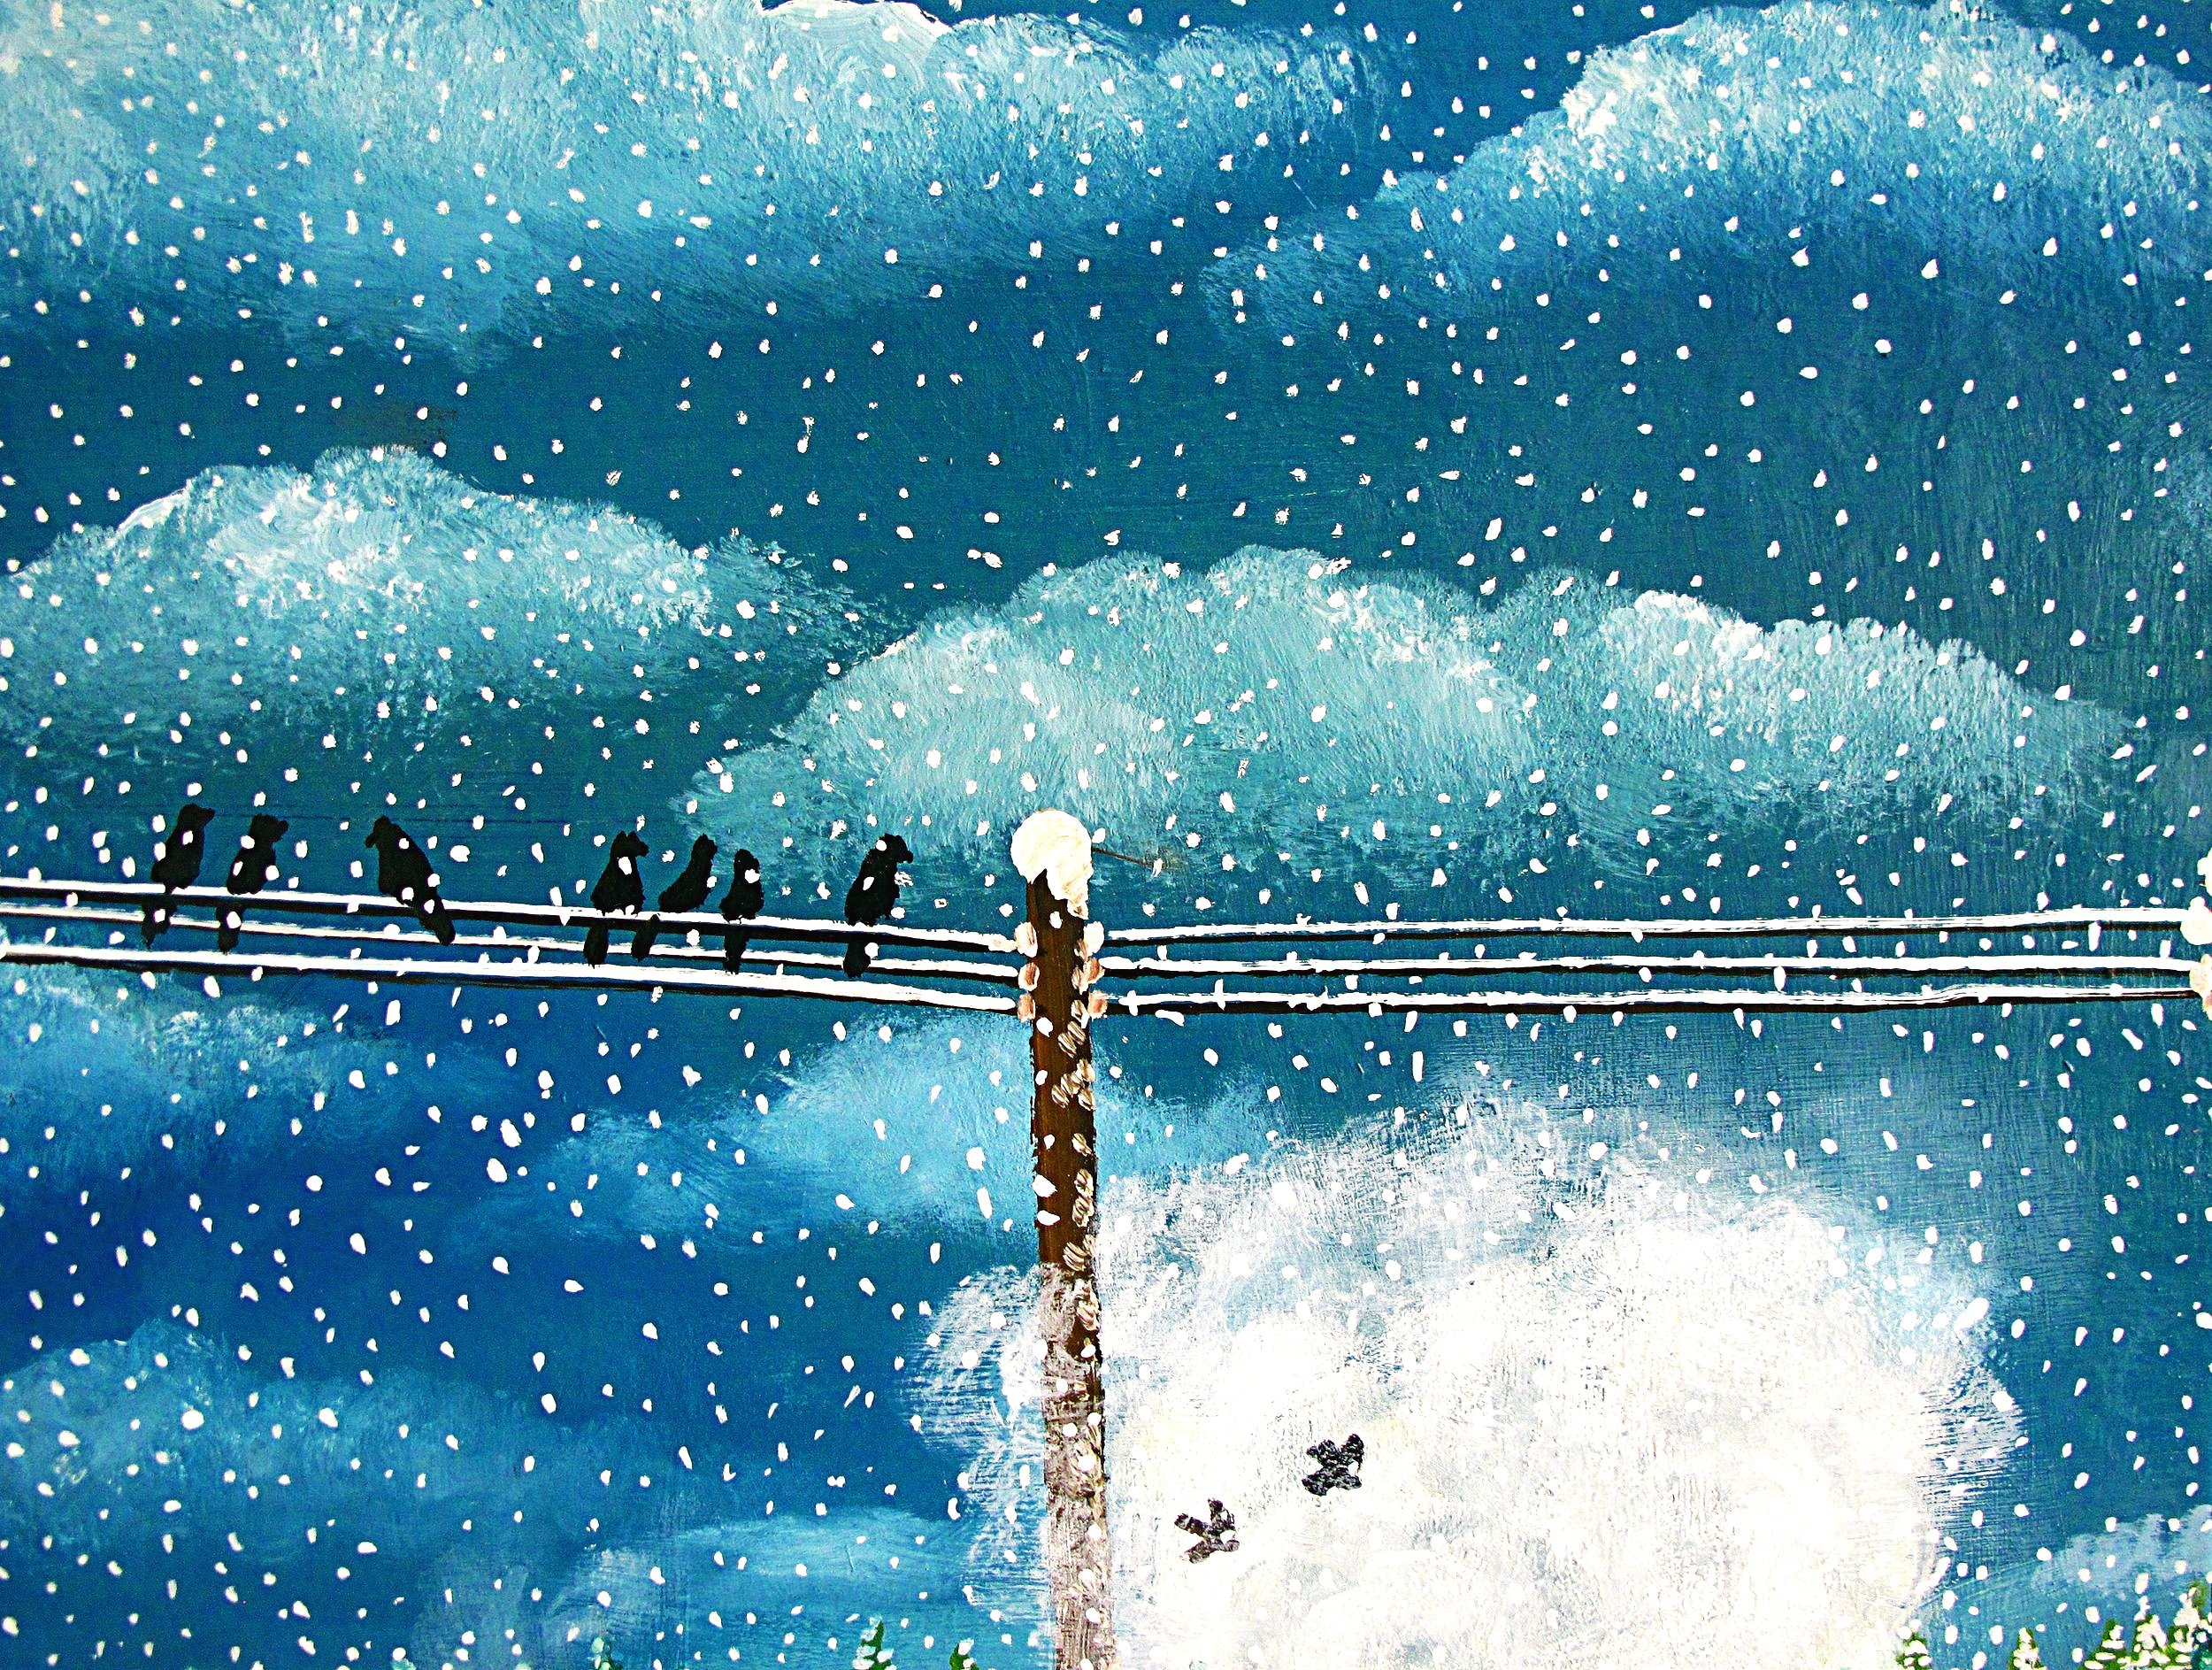 pxr++snow+birds.jpg